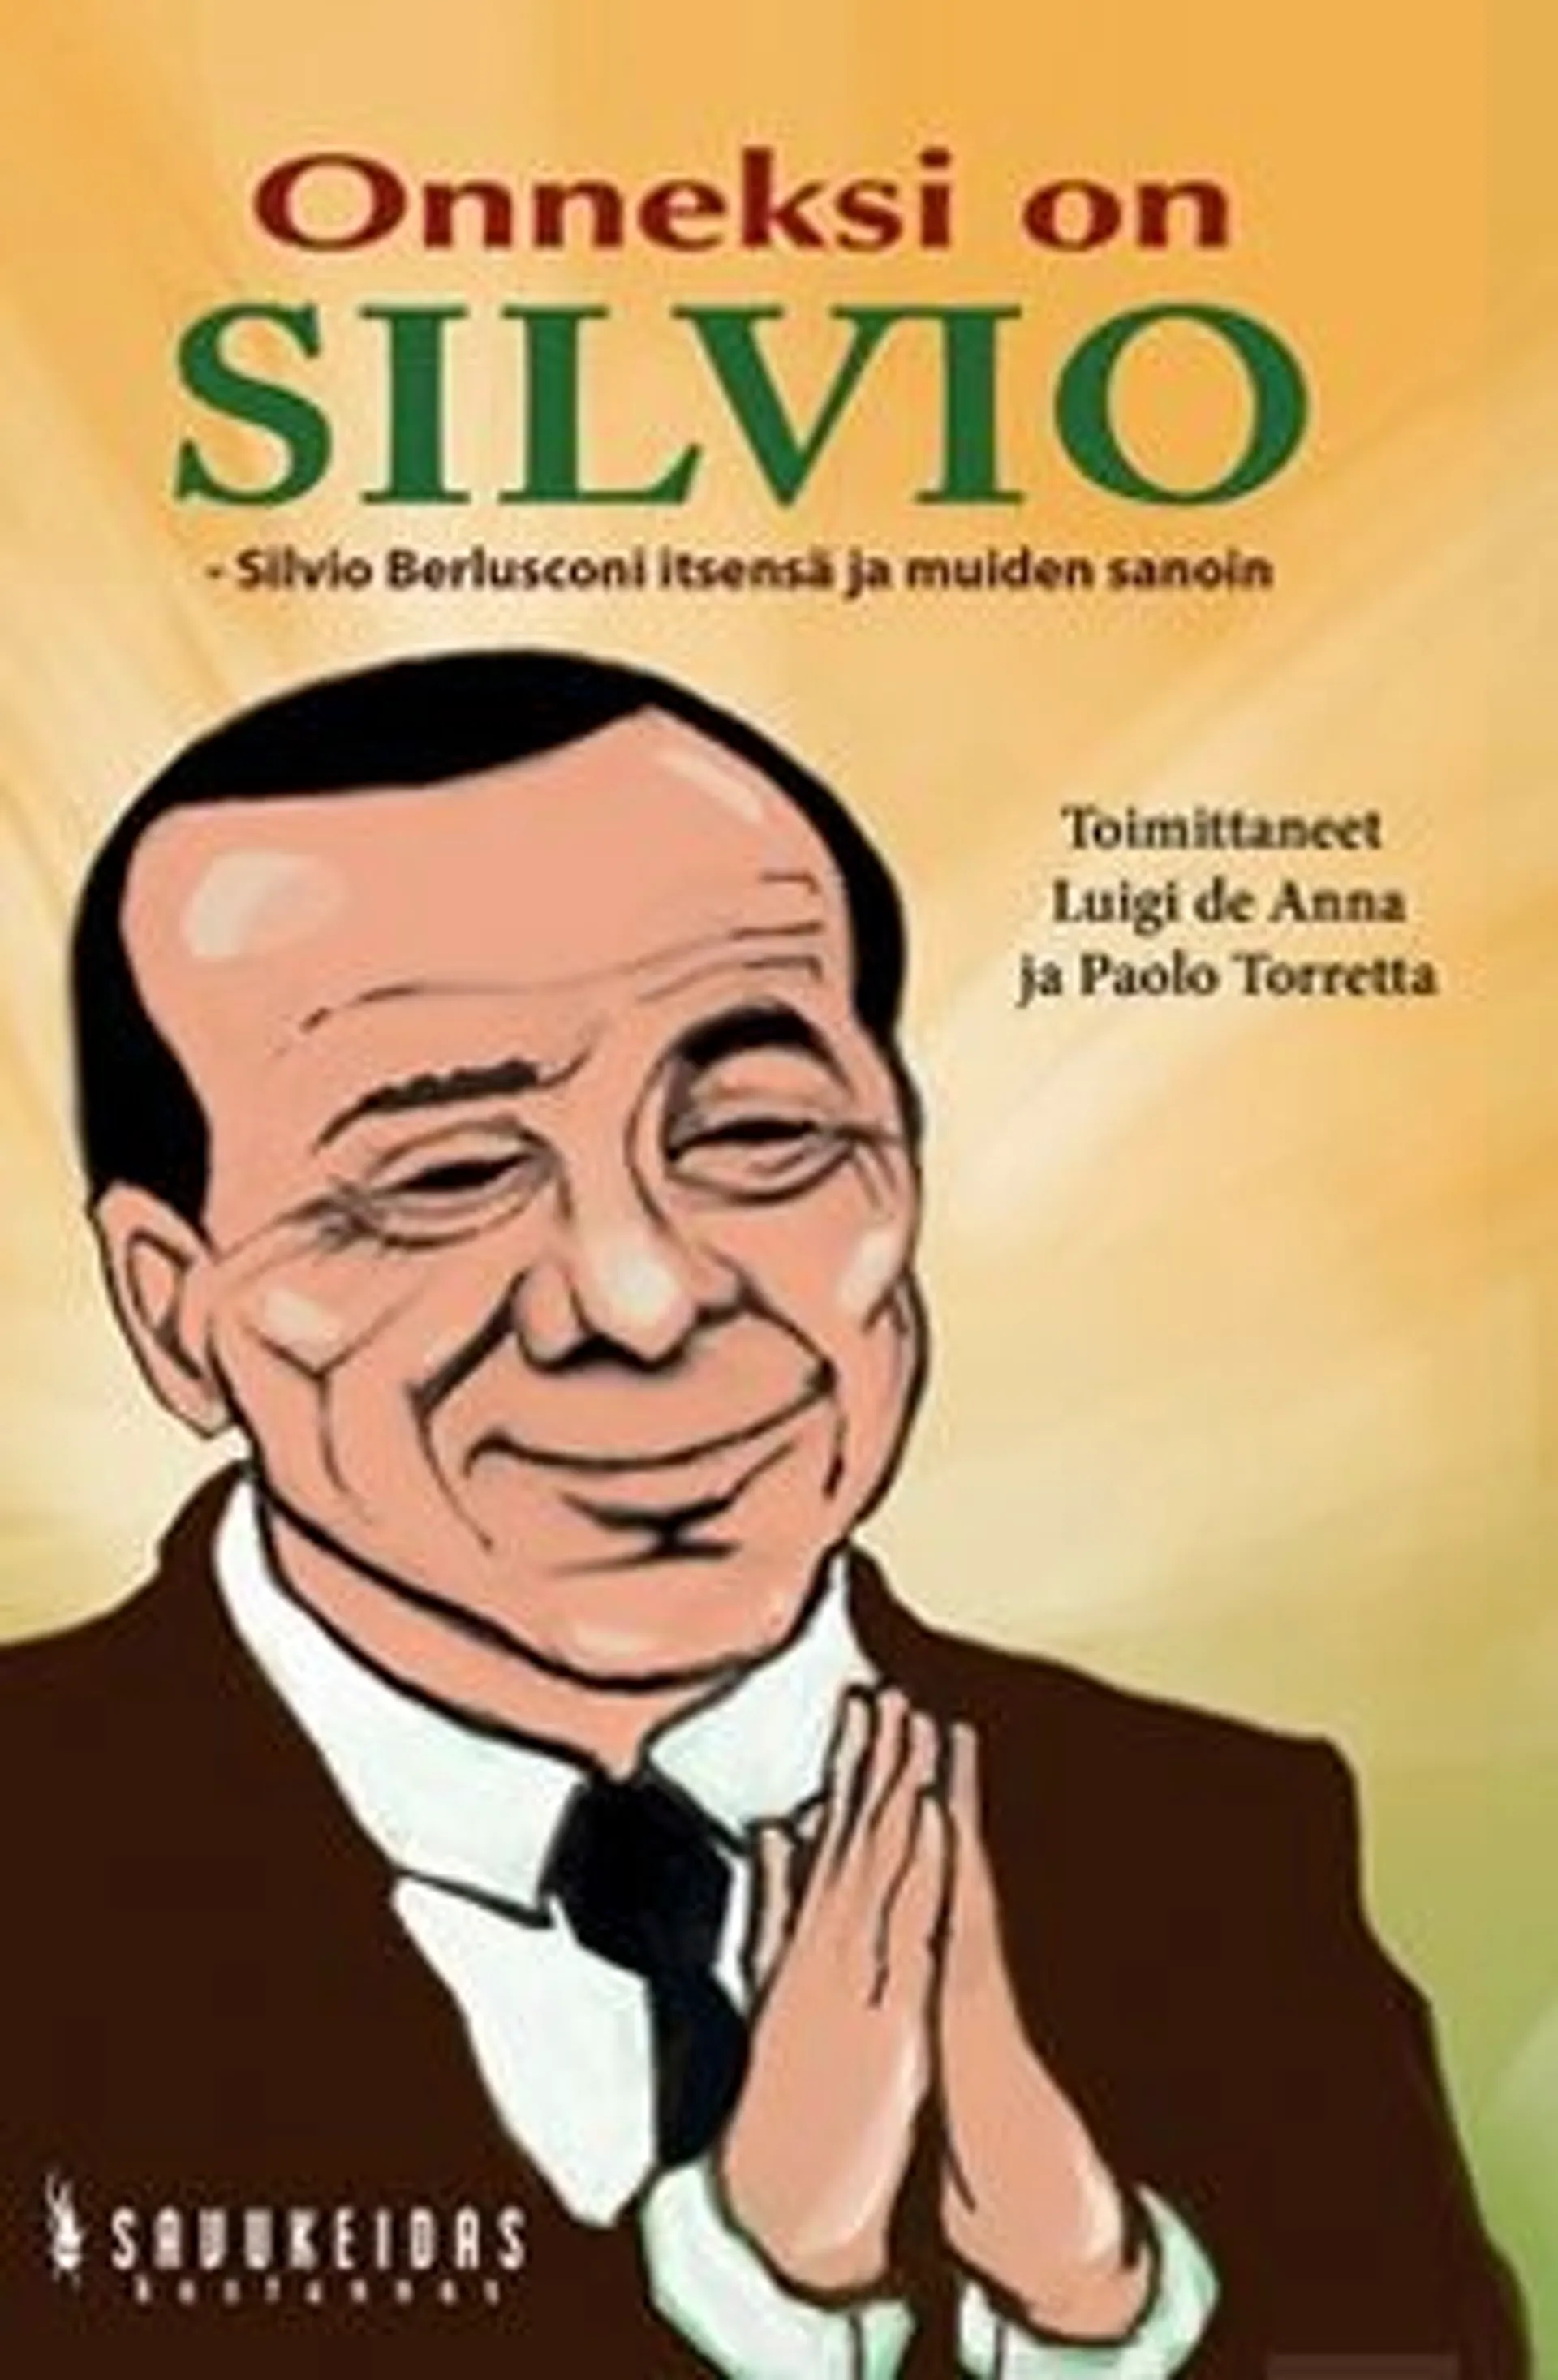 Onneksi on Silvio - Silvio Berlusconi itsensä ja muiden sanoin